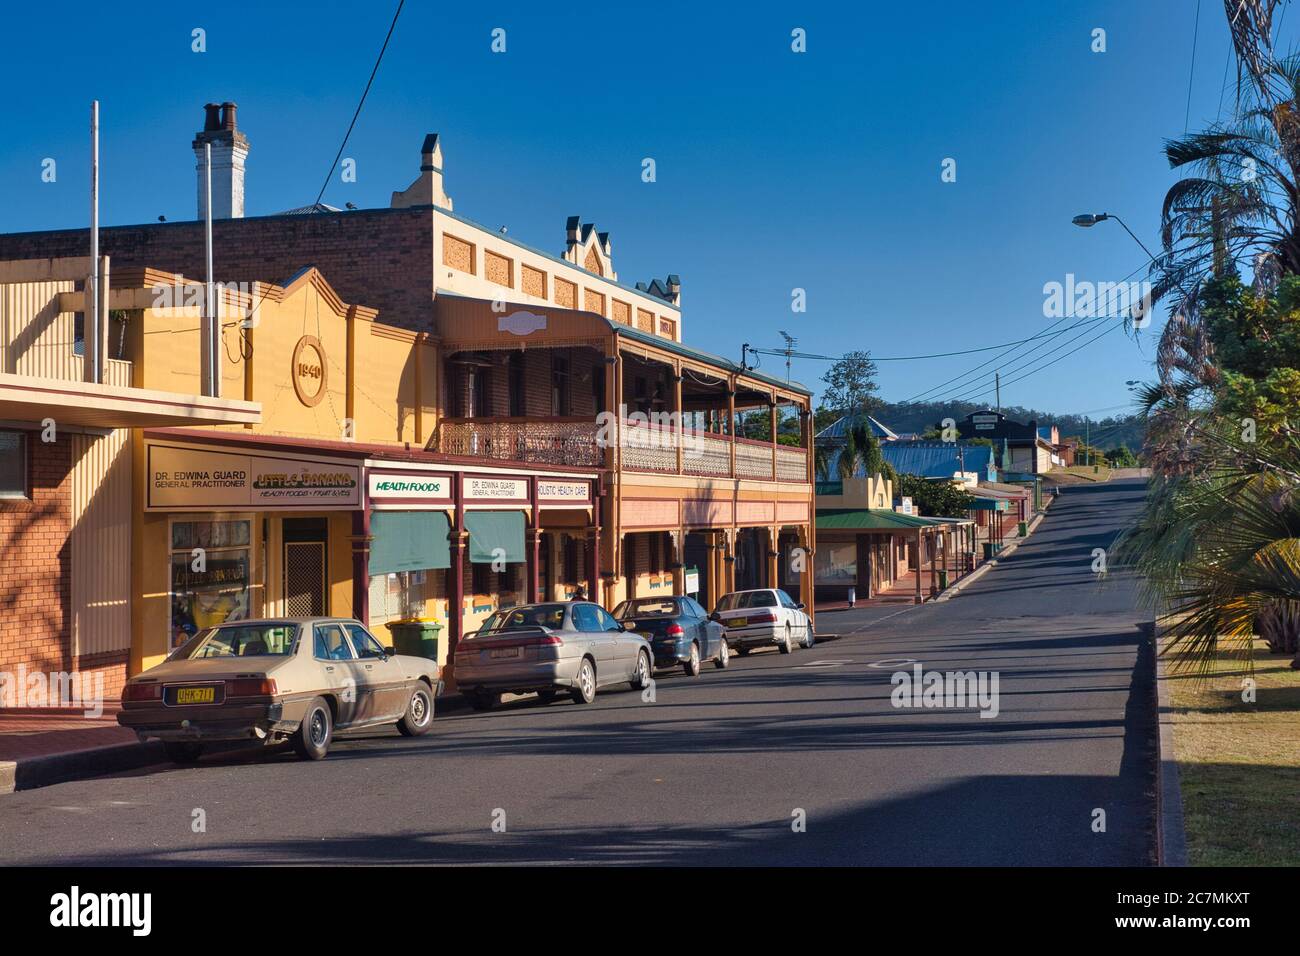 Tipica architettura dei primi del 1900 di passaggi coperti, archi e balconi in ferro battuto nella cittadina di Bowraville, a metà del NSW., Australia Foto Stock